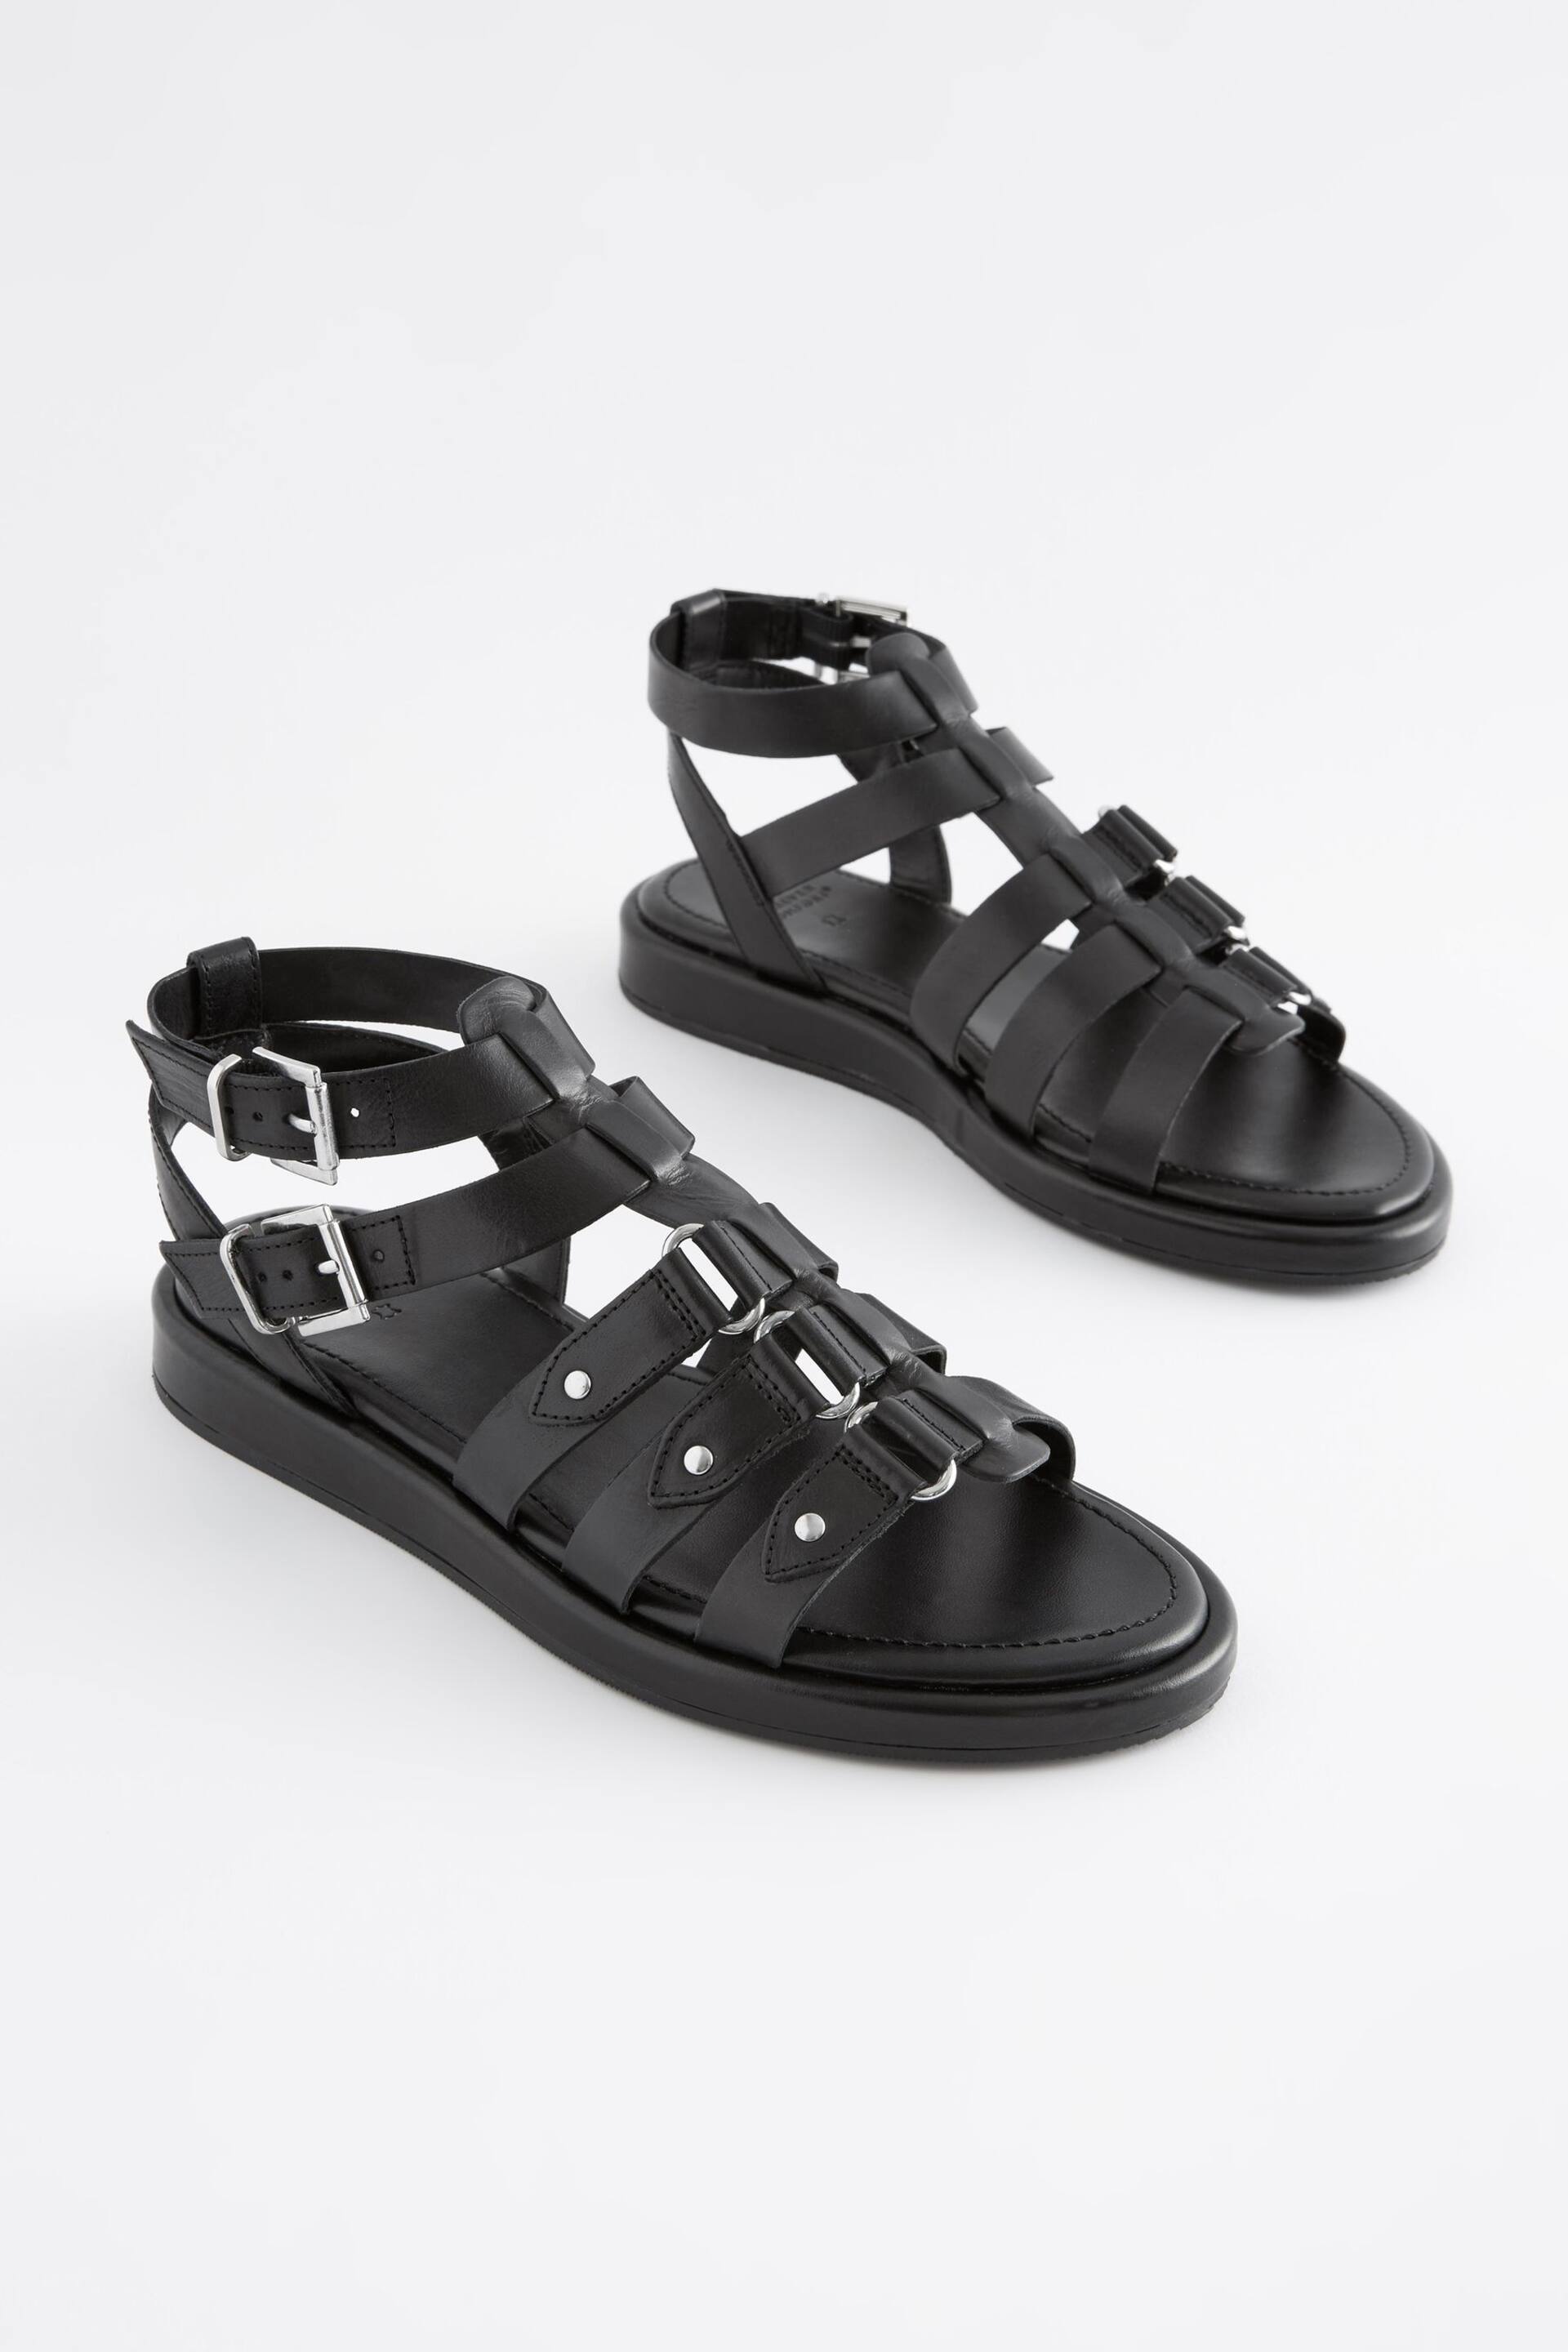 Black Regular/Wide Fit Forever Comfort® Leather Gladiator Sandals - Image 5 of 8